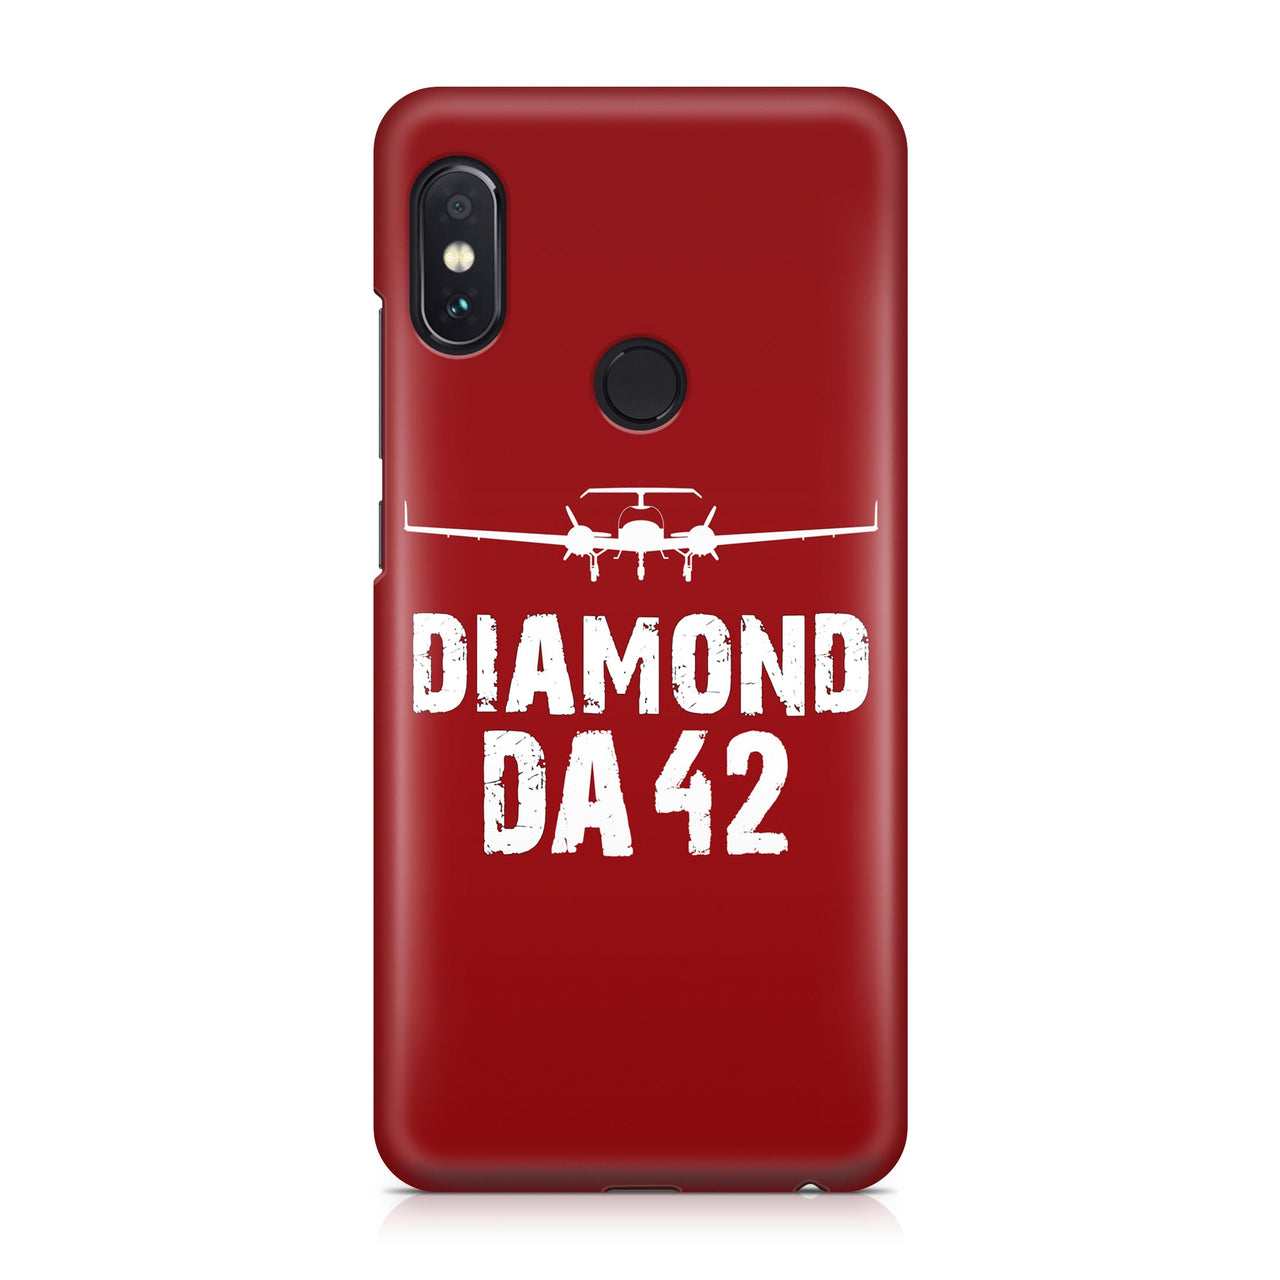 Diamond DA-42 Plane & Designed Xiaomi Cases